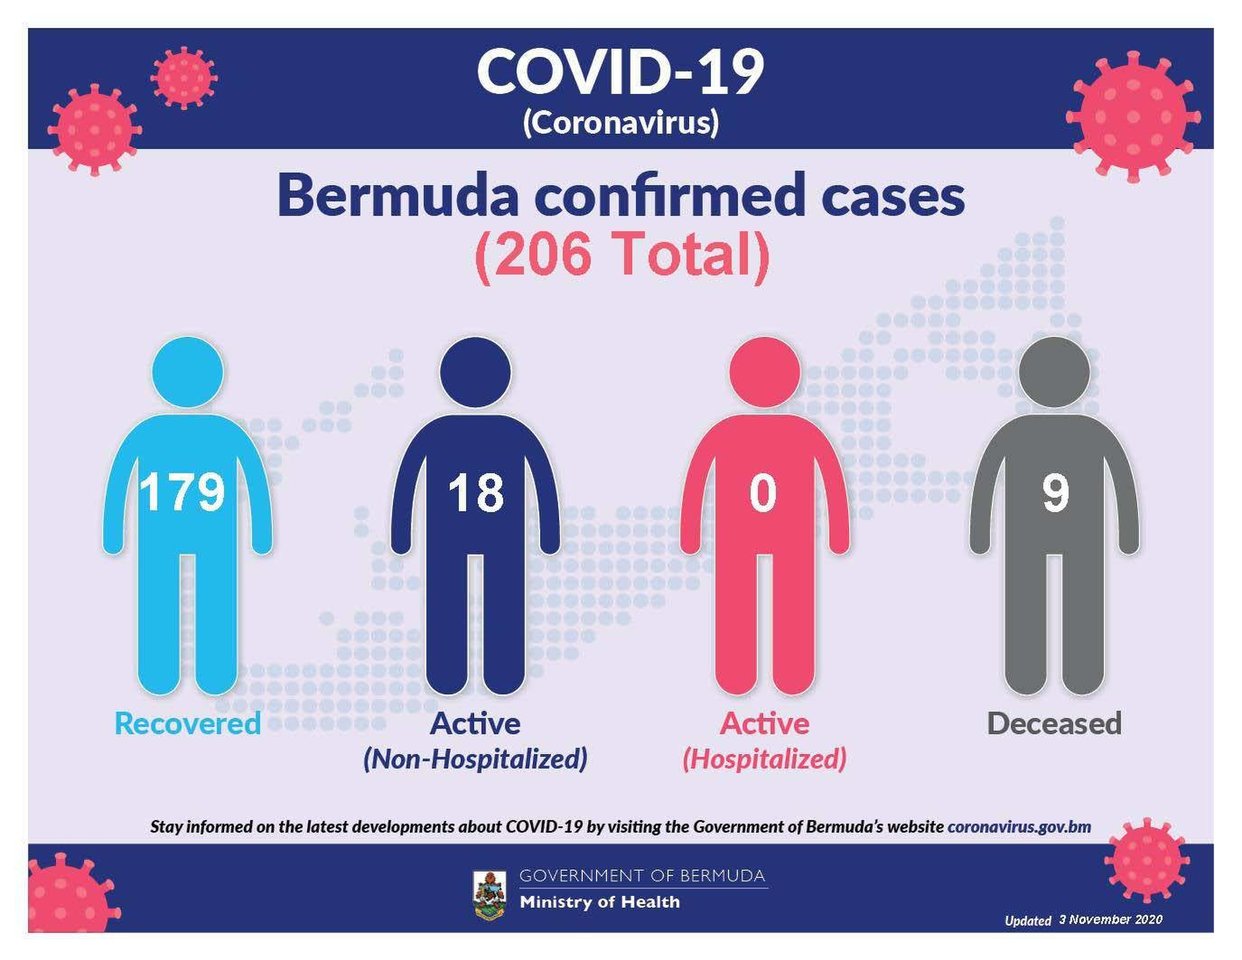 No new COVID-19 cases reported in Bermuda, 4 November